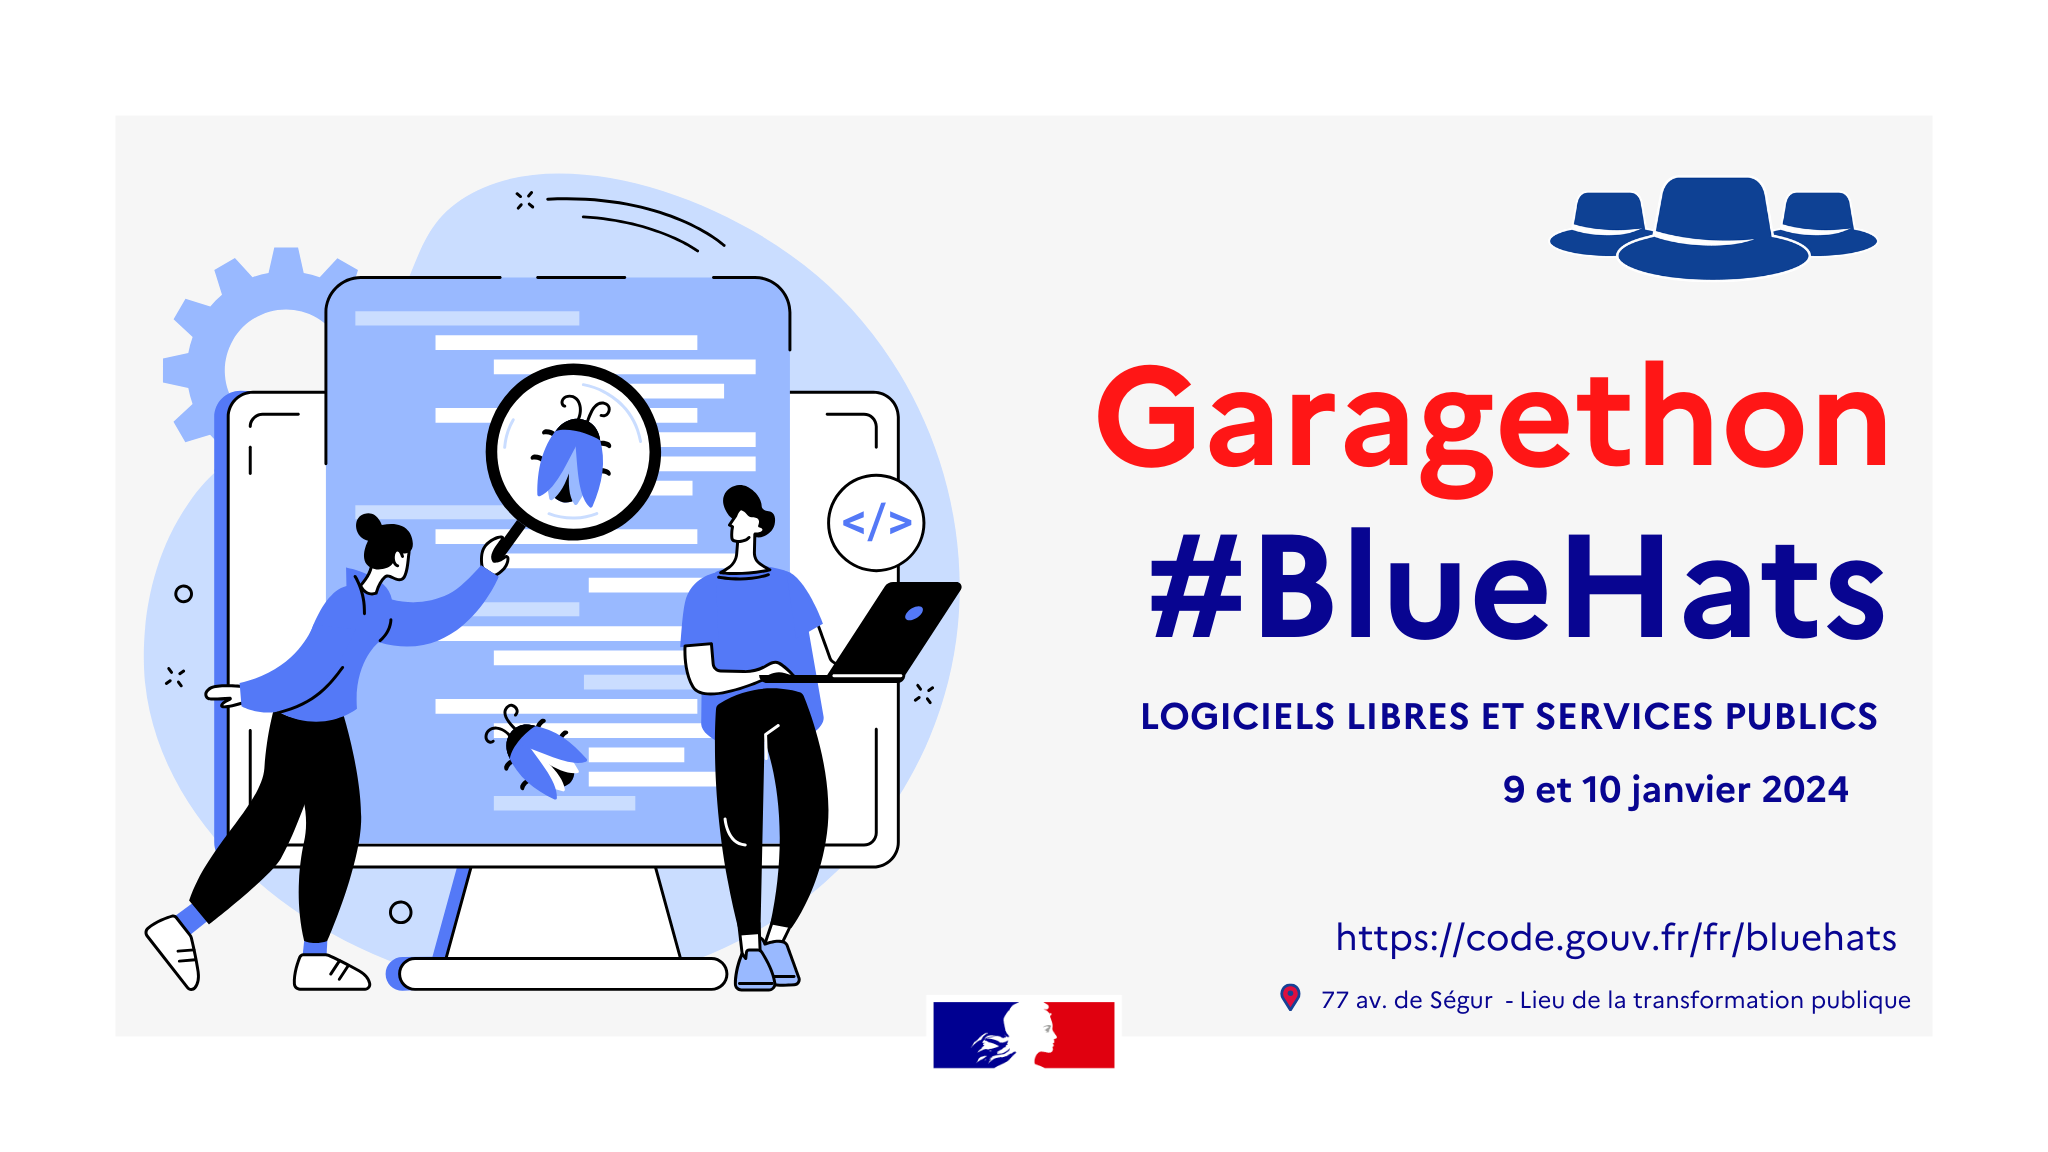 Illustration pour le garagethon #BlueHats les 9 et 10 janvier 2024